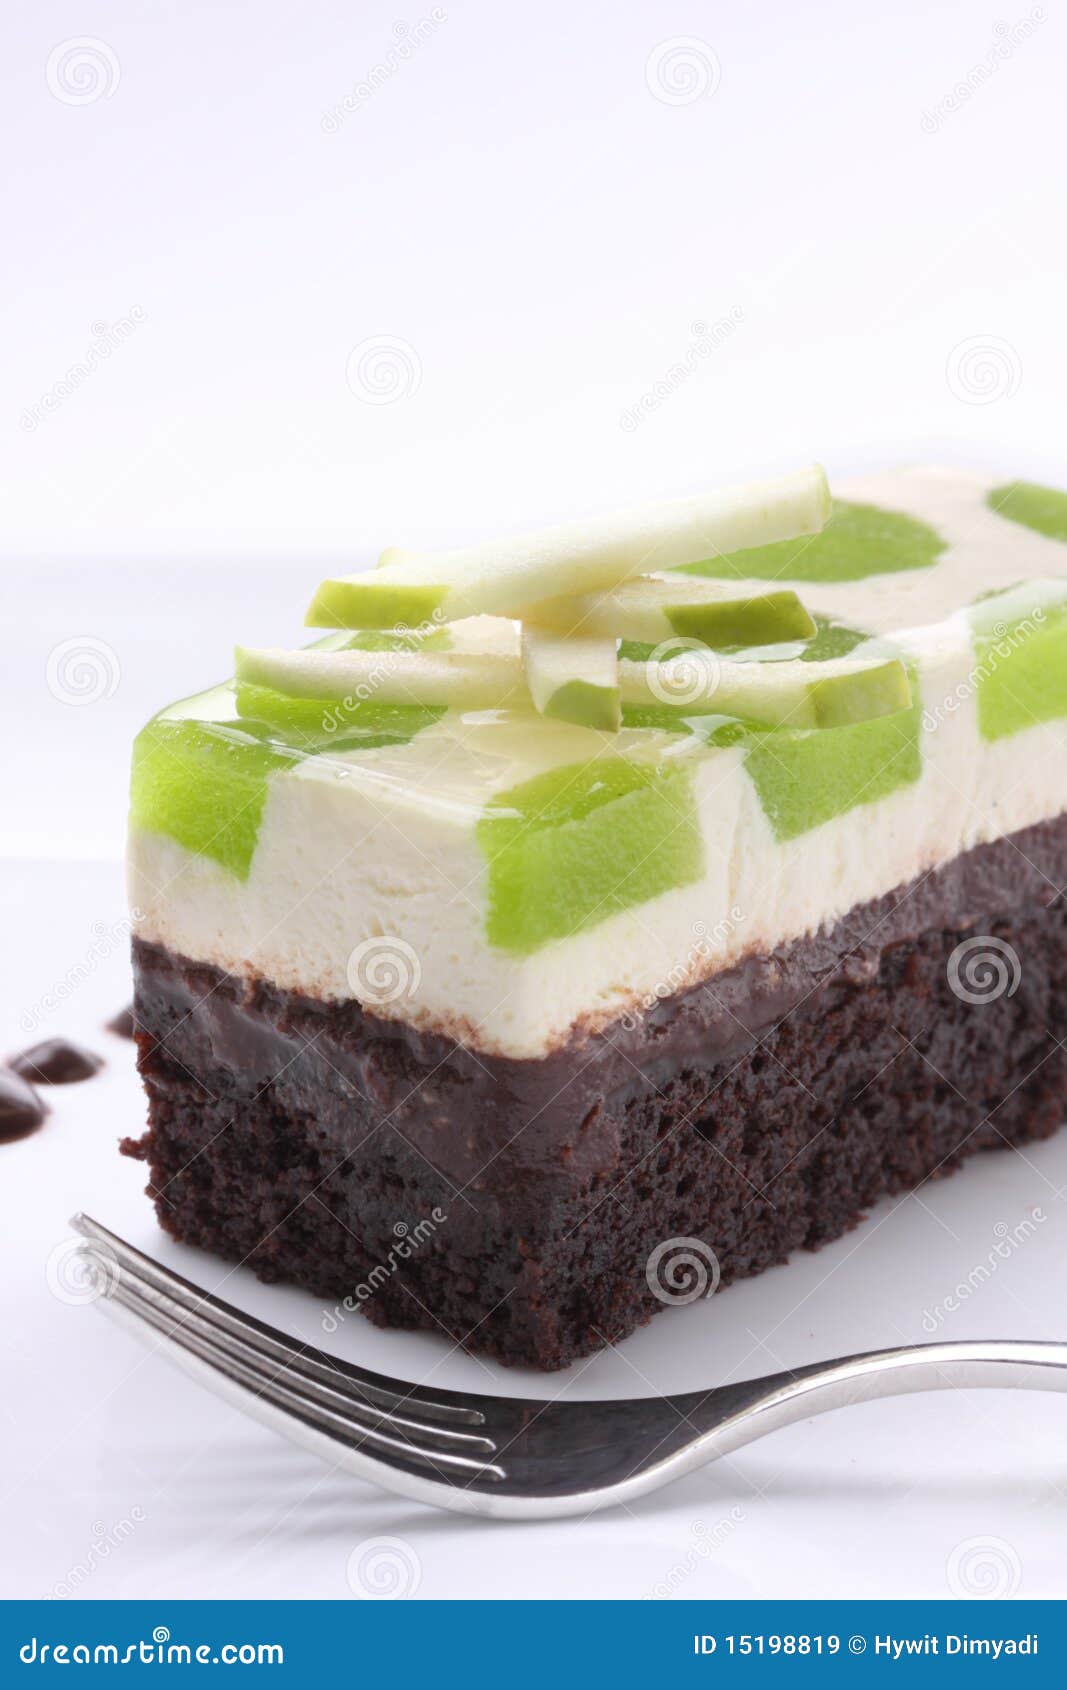 厨苑食谱: 青苹果巧可力慕斯蛋糕 （Green Apple Chocolate Mousse Cake）